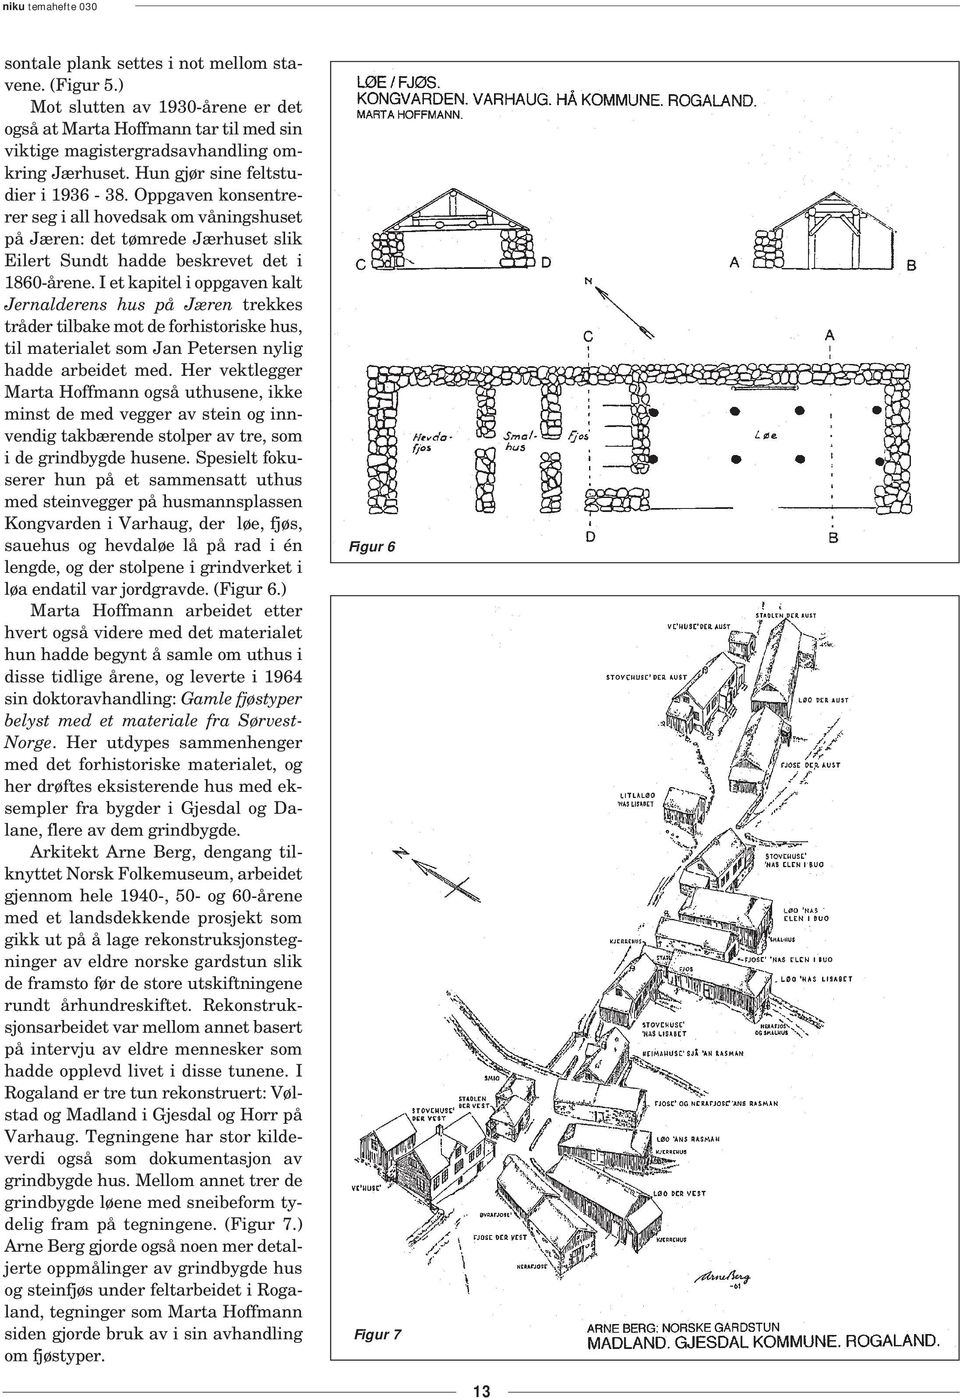 I et kapitel i oppgaven kalt Jernalderens hus på Jæren trekkes tråder tilbake mot de forhistoriske hus, til materialet som Jan Petersen nylig hadde arbeidet med.